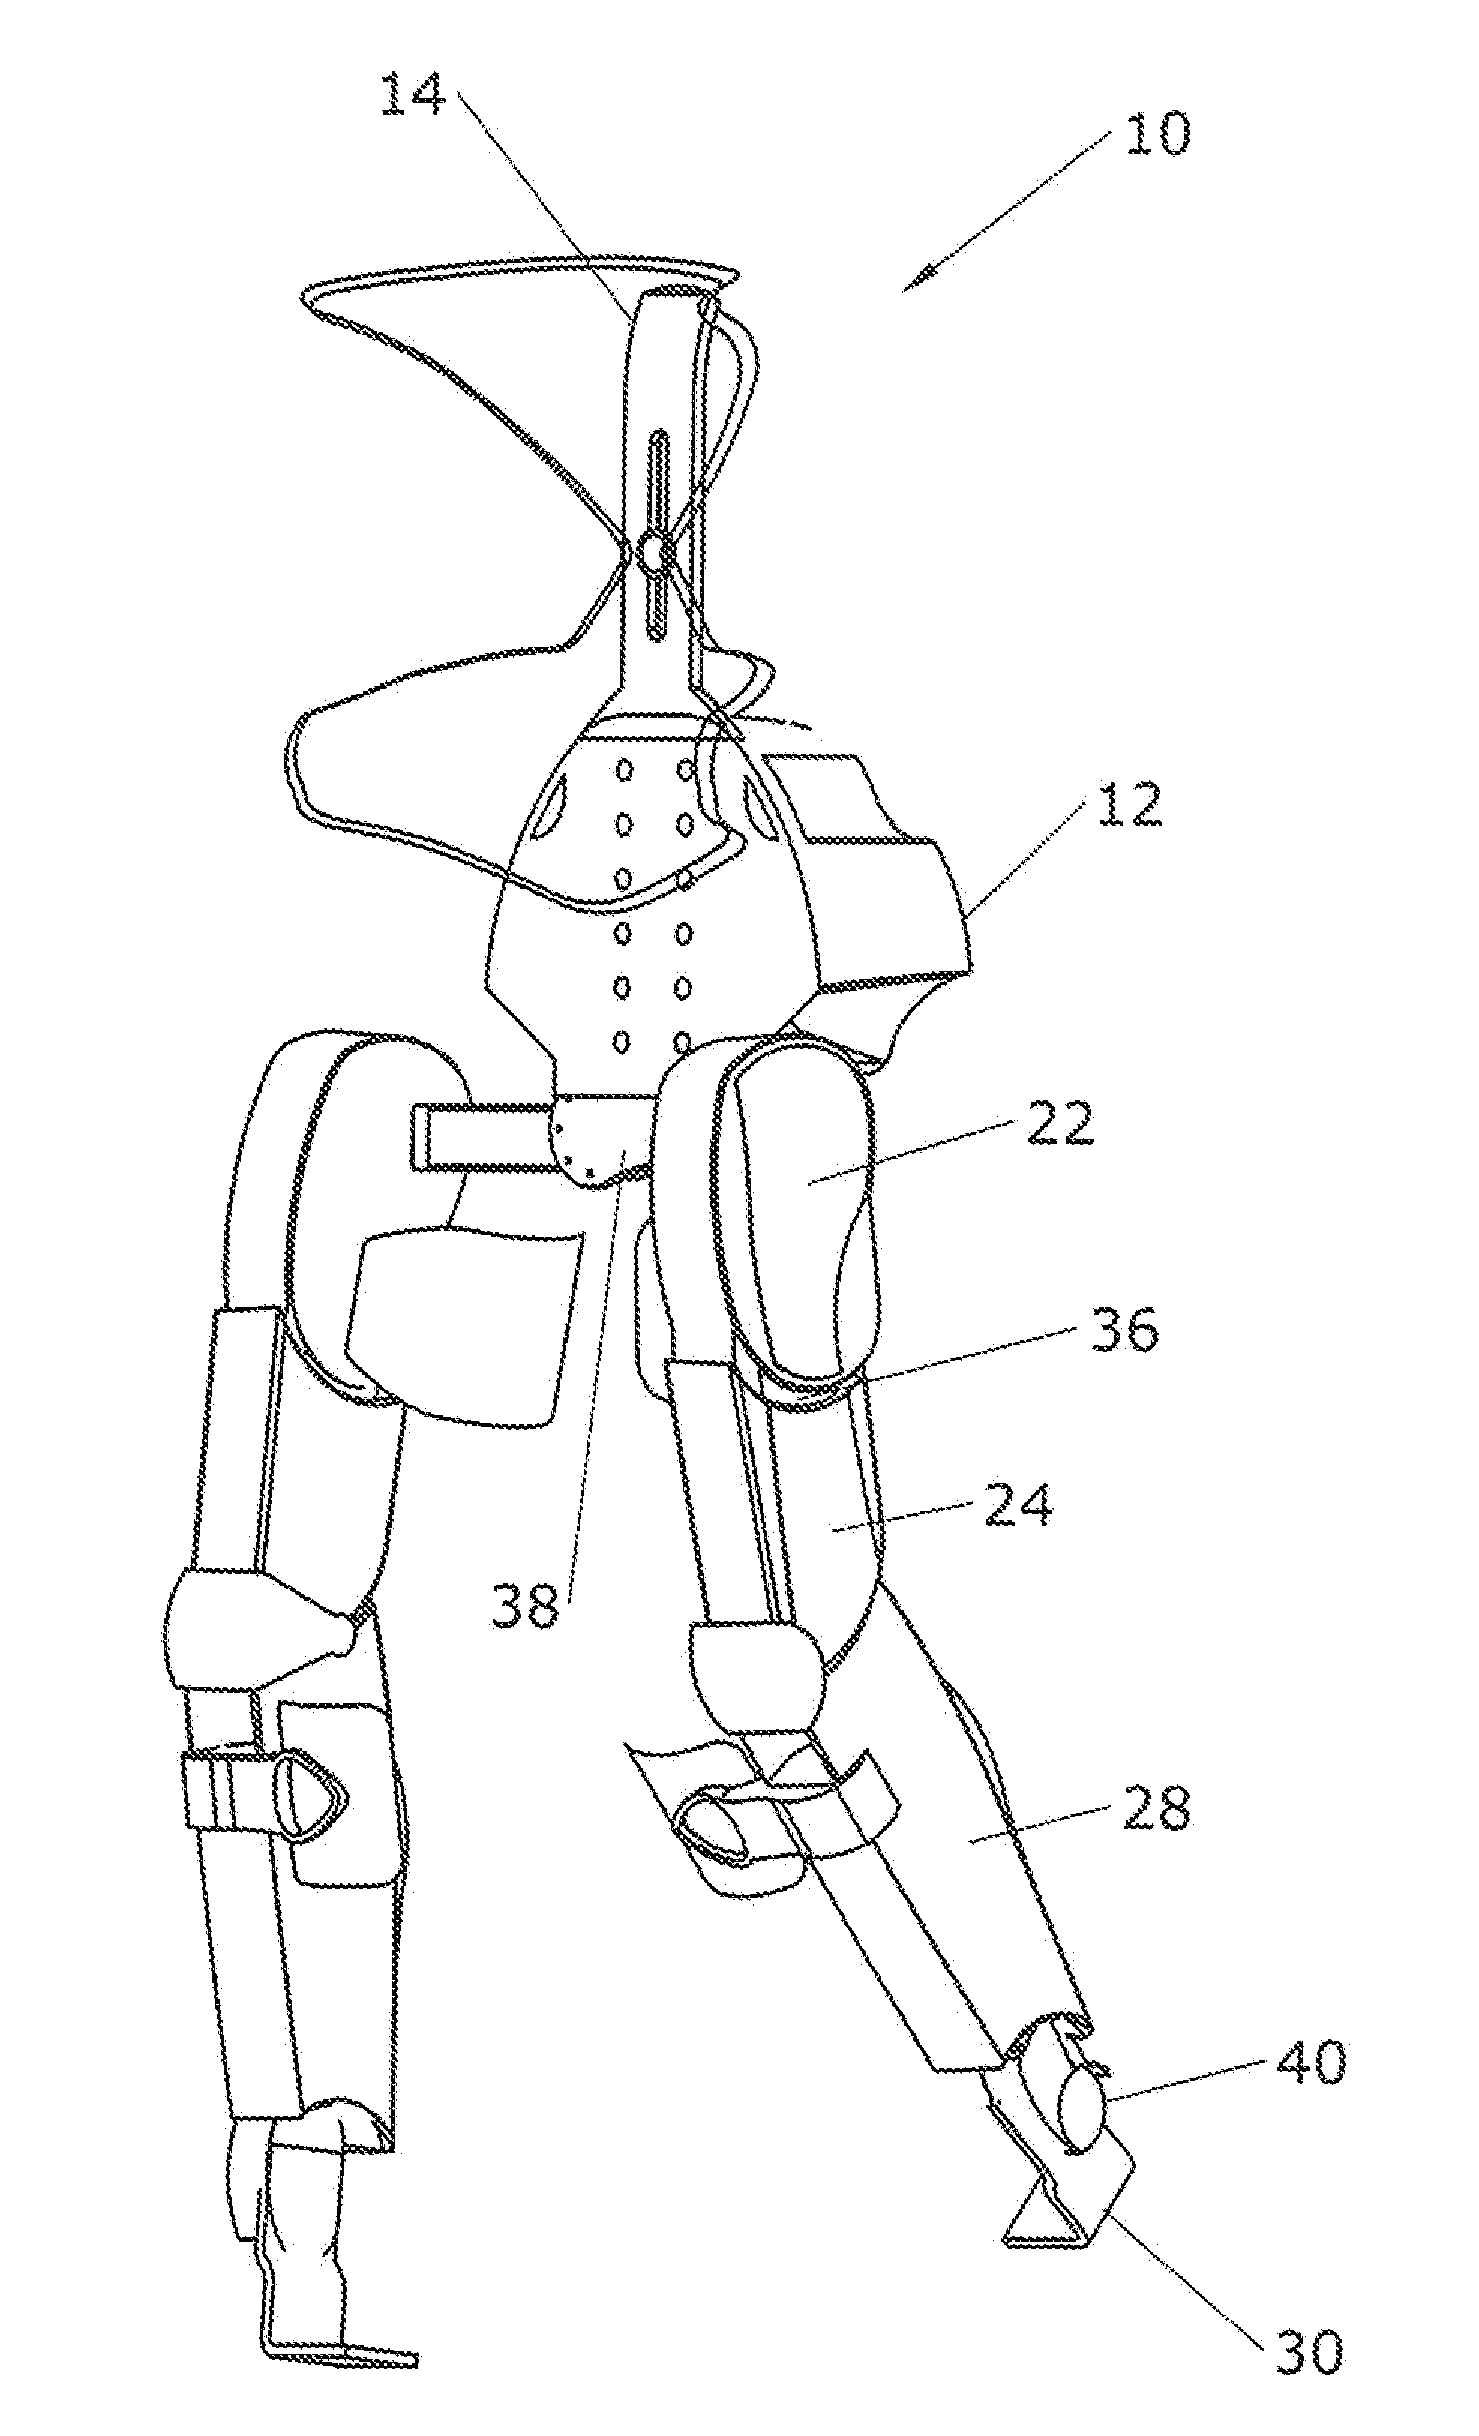 Bipedal Exoskeleton and Methods of Use